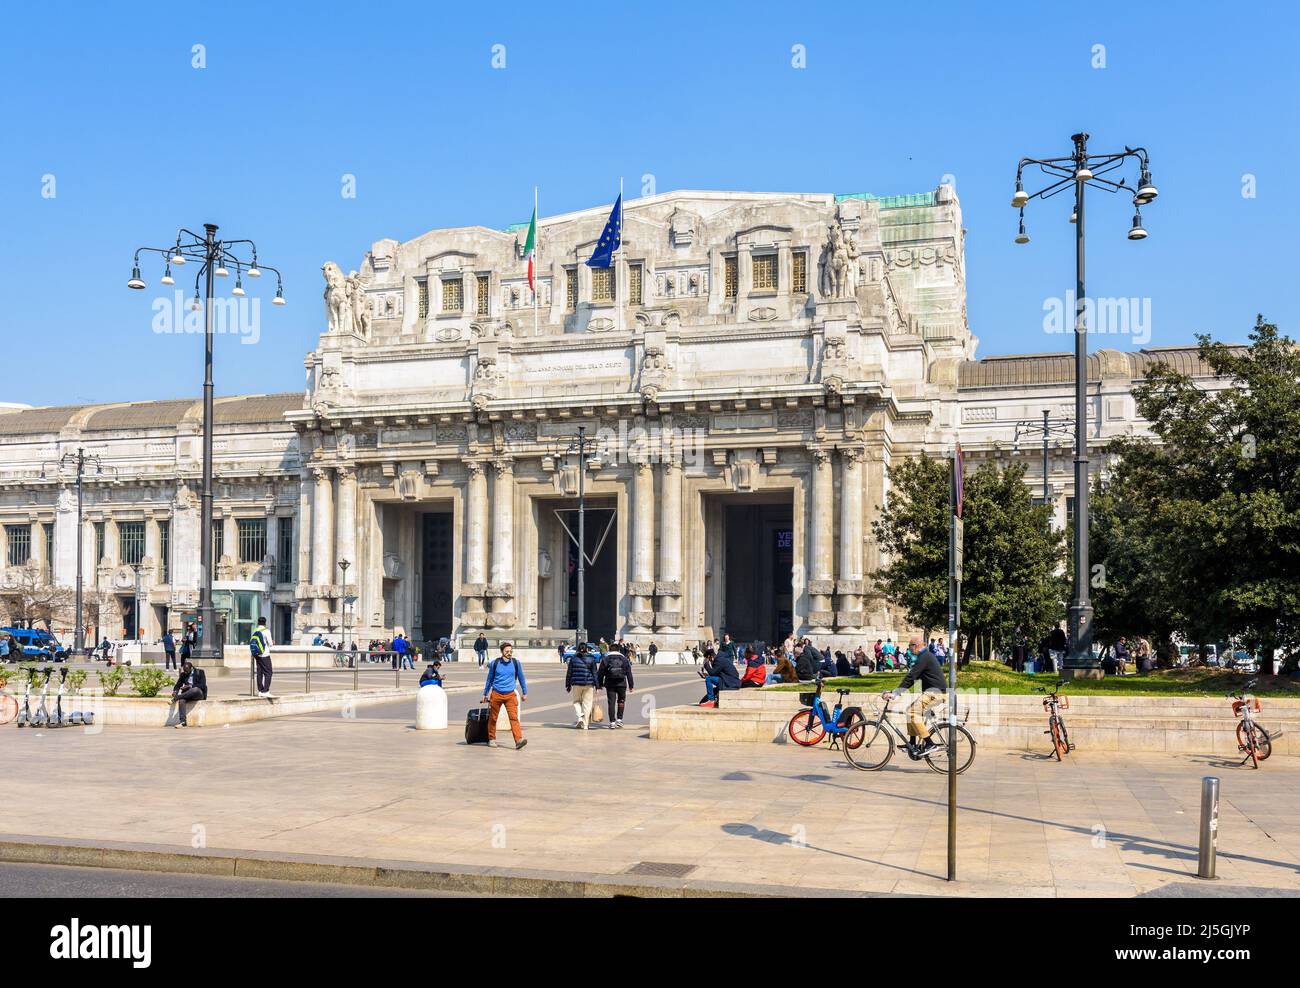 Vista general del pórtico monumental de la entrada de la estación de tren Milano Centrale en Milán, Italia. Foto de stock